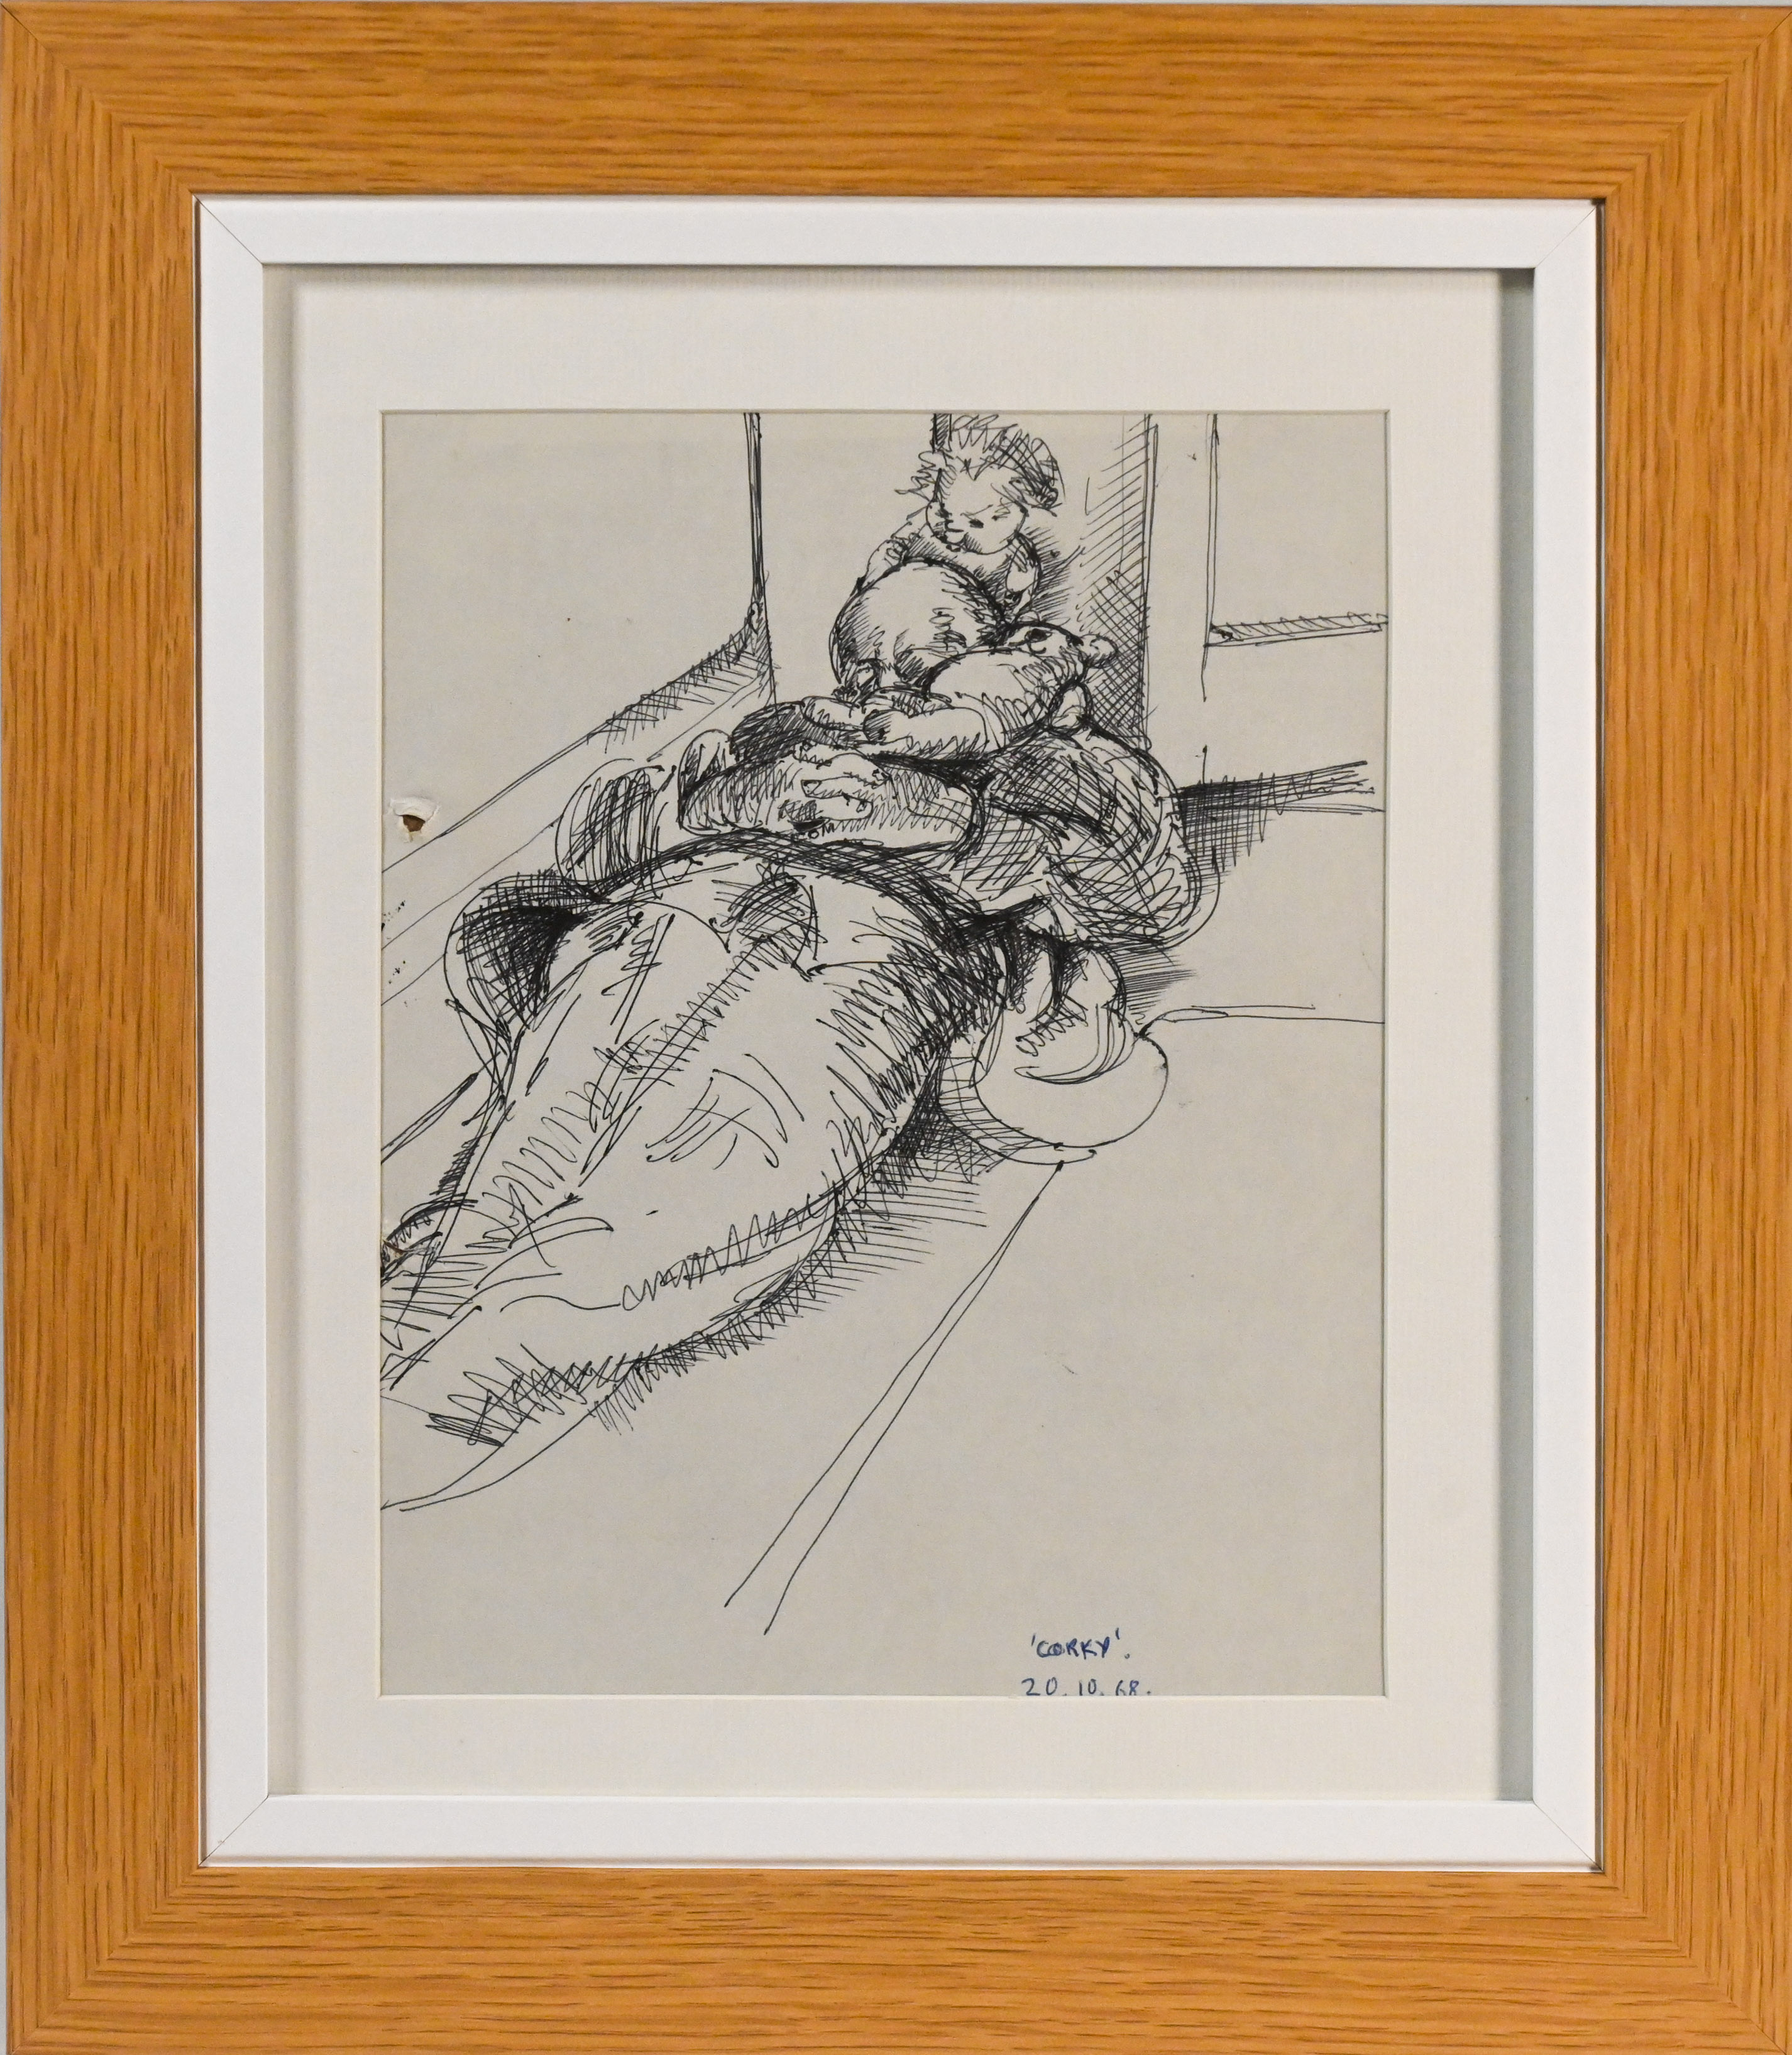 Robert Lenkiewicz (1941-2002) Jeremiah Crone - 'Corky'. 1968. 257 x 205mm, ink on paper, framed